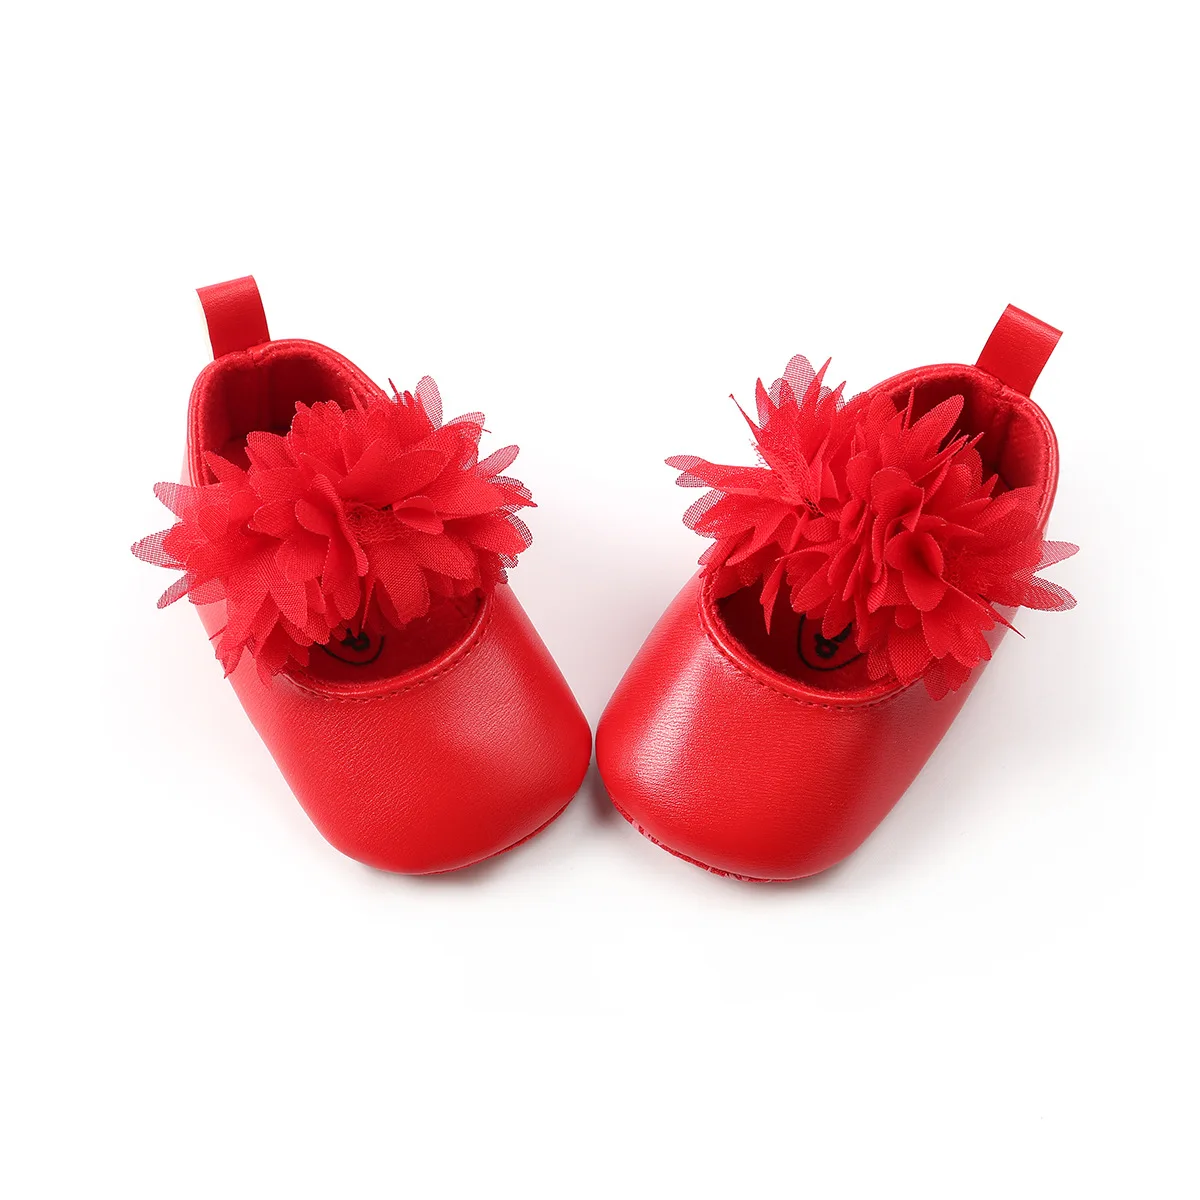 Шва Шитье Цветок принцесса обувь для малышей обувь мягкая подошва ткань на основе обувь BABY'S обувь M1815